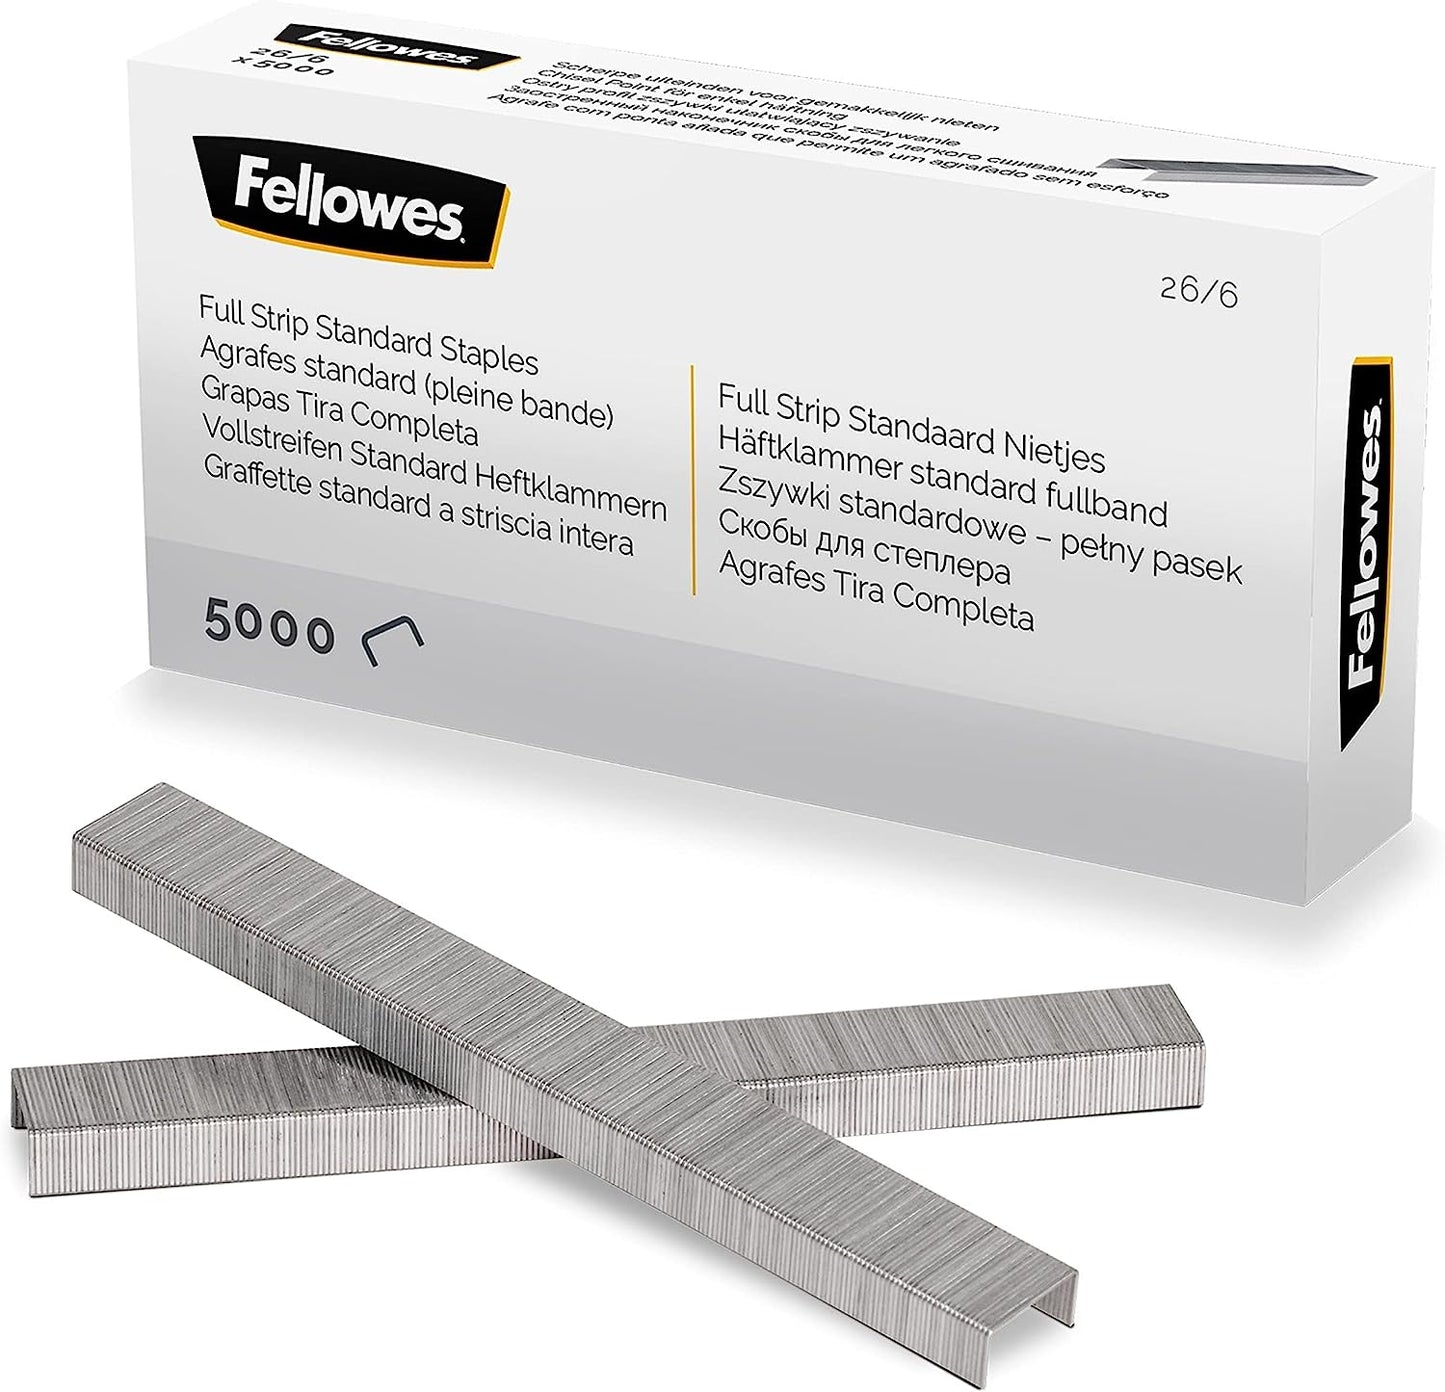 Fellowes Jam Free Stapler, 20 Sheet Capacity - LX820 Full Strip Antibacterial Manual Stapler- Uses Both 24/6mm and 26/6mm Staples